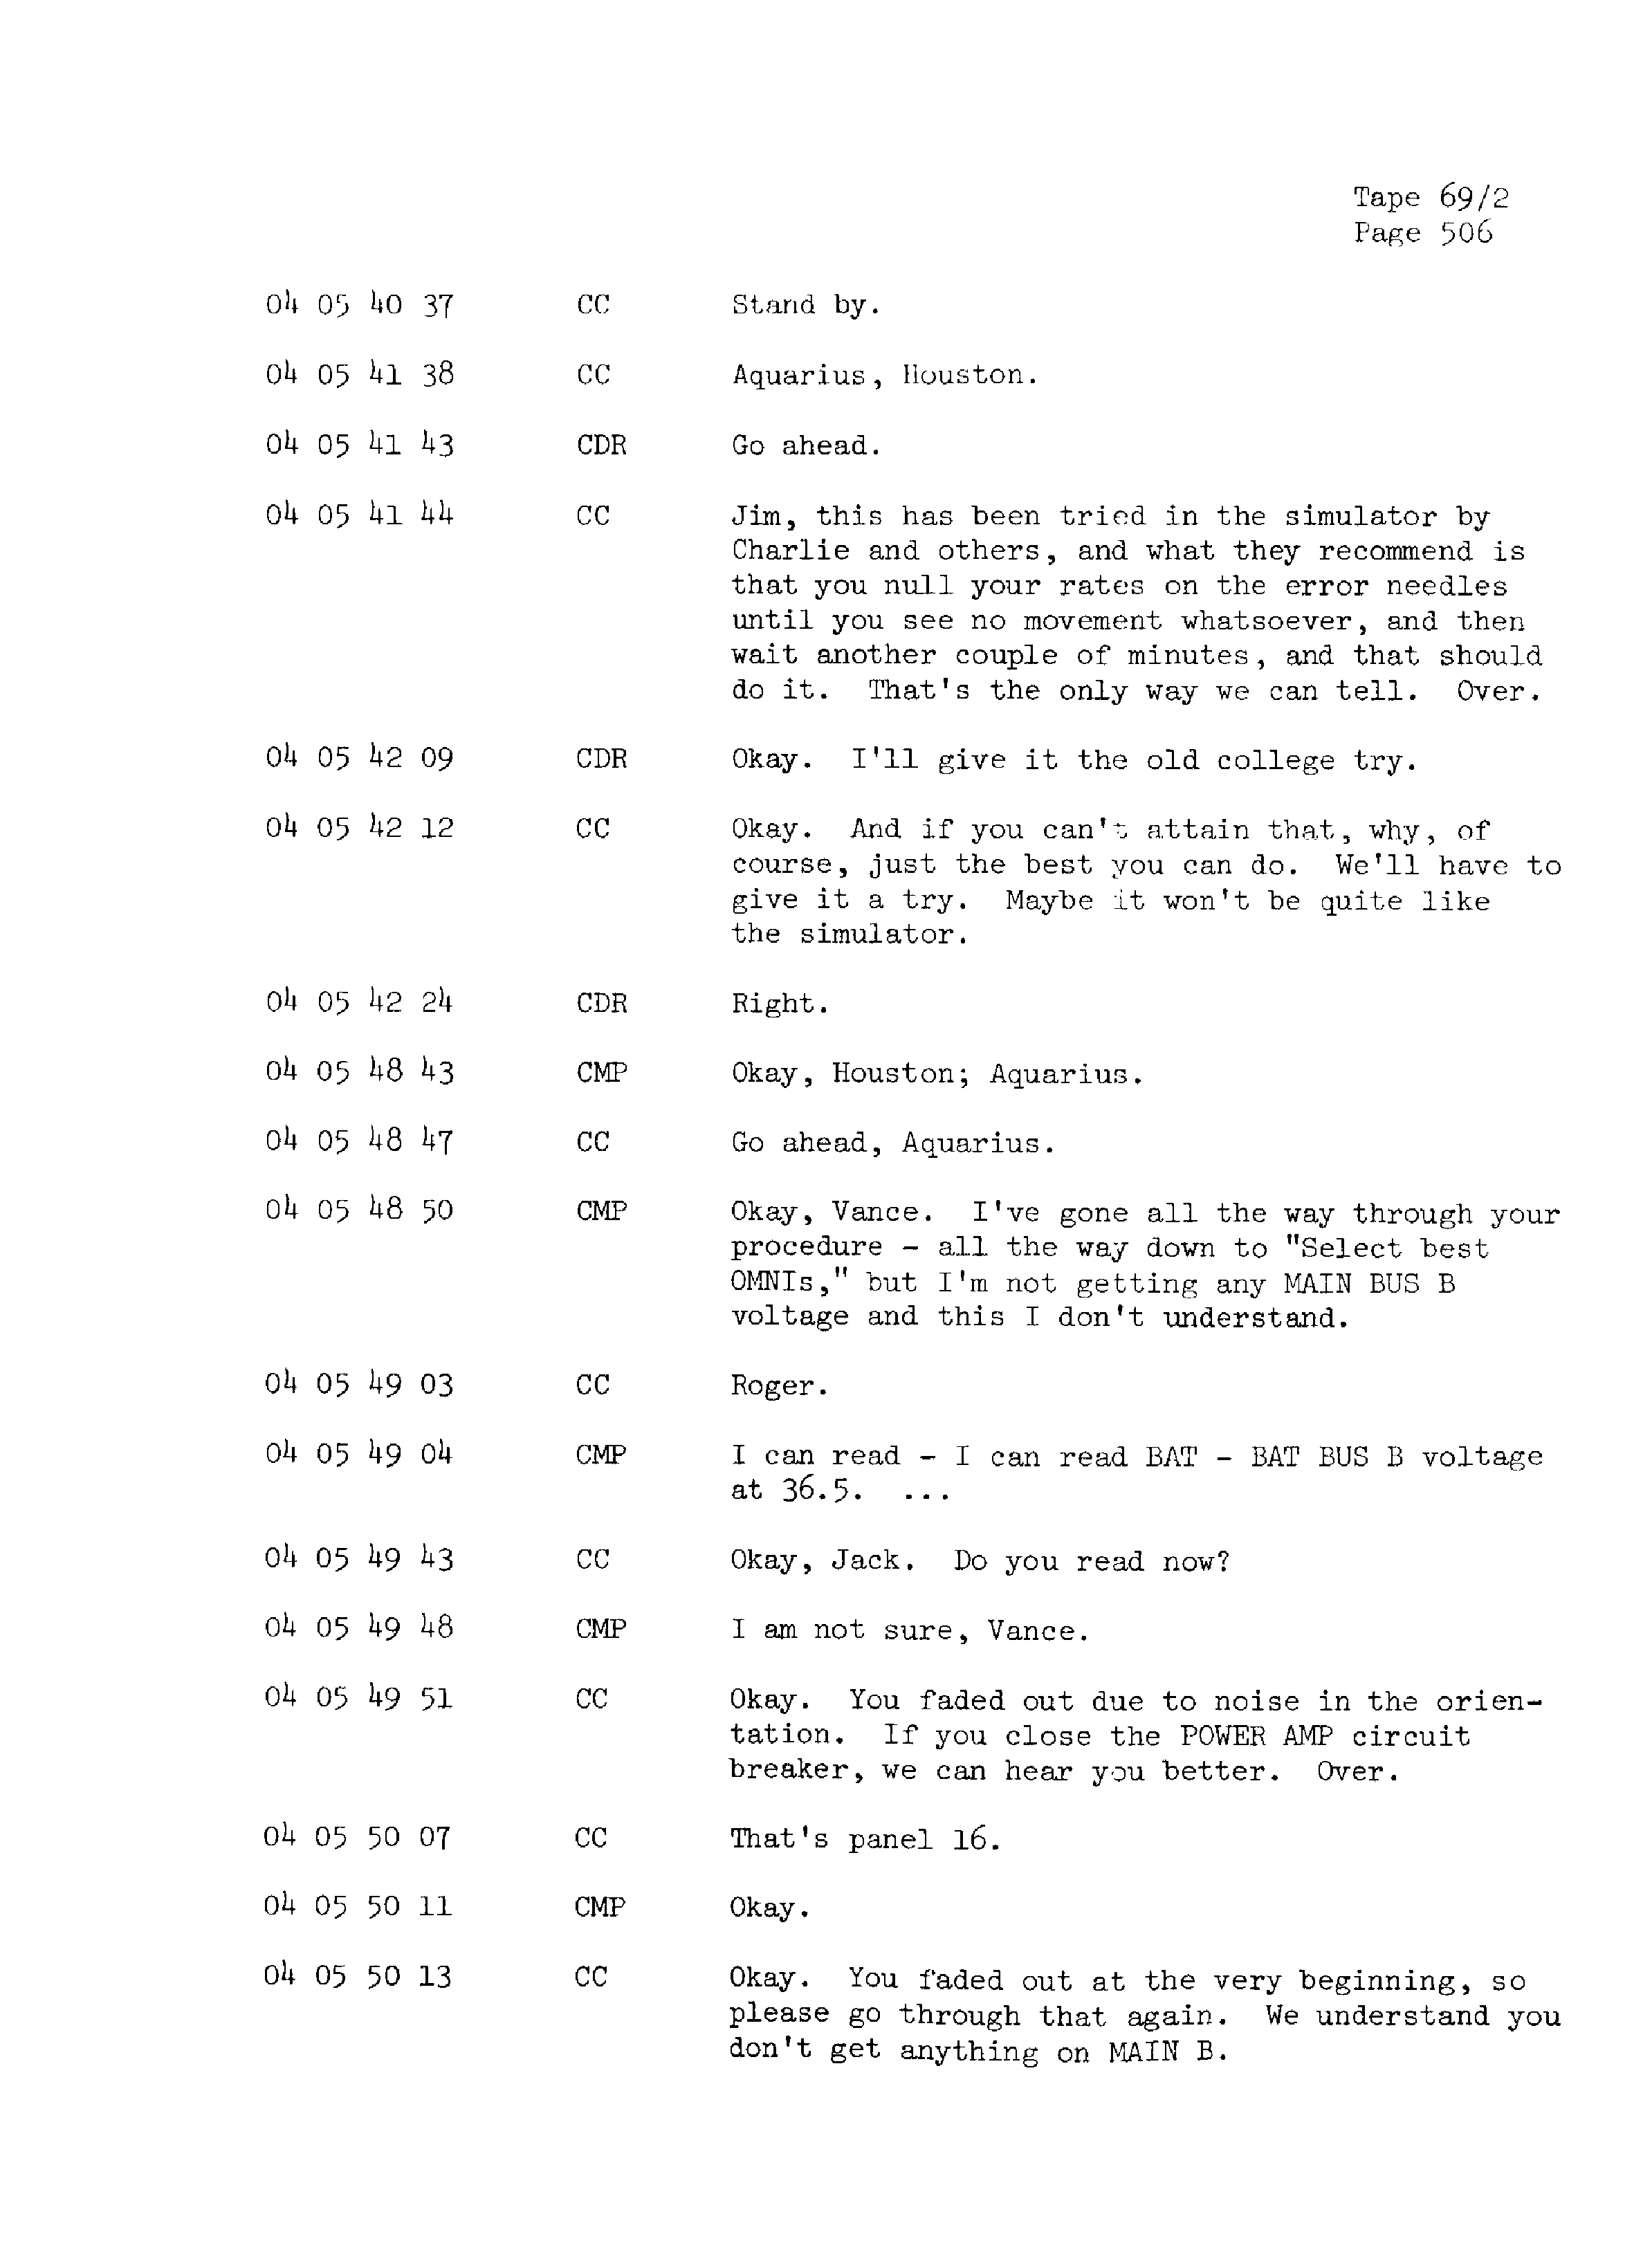 Page 513 of Apollo 13’s original transcript